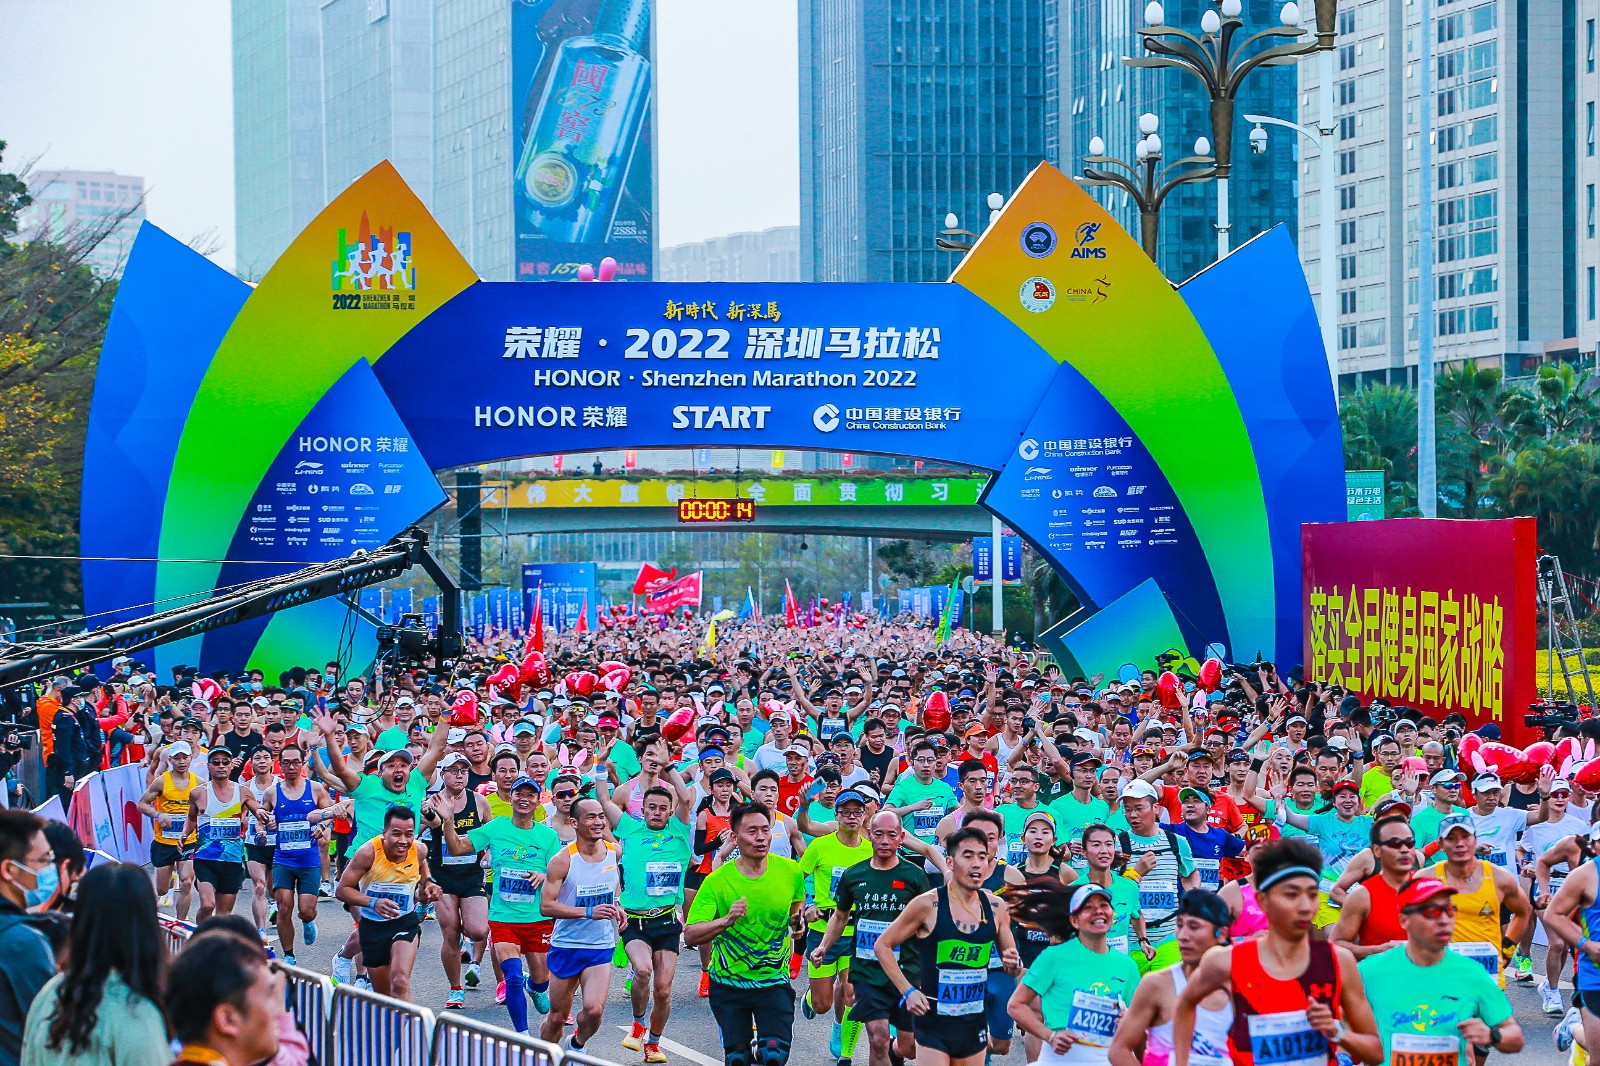 金年会娱乐官网首页下载成功举办荣耀·2022深圳马拉松 为城市增光添彩、为民生健康幸福助力